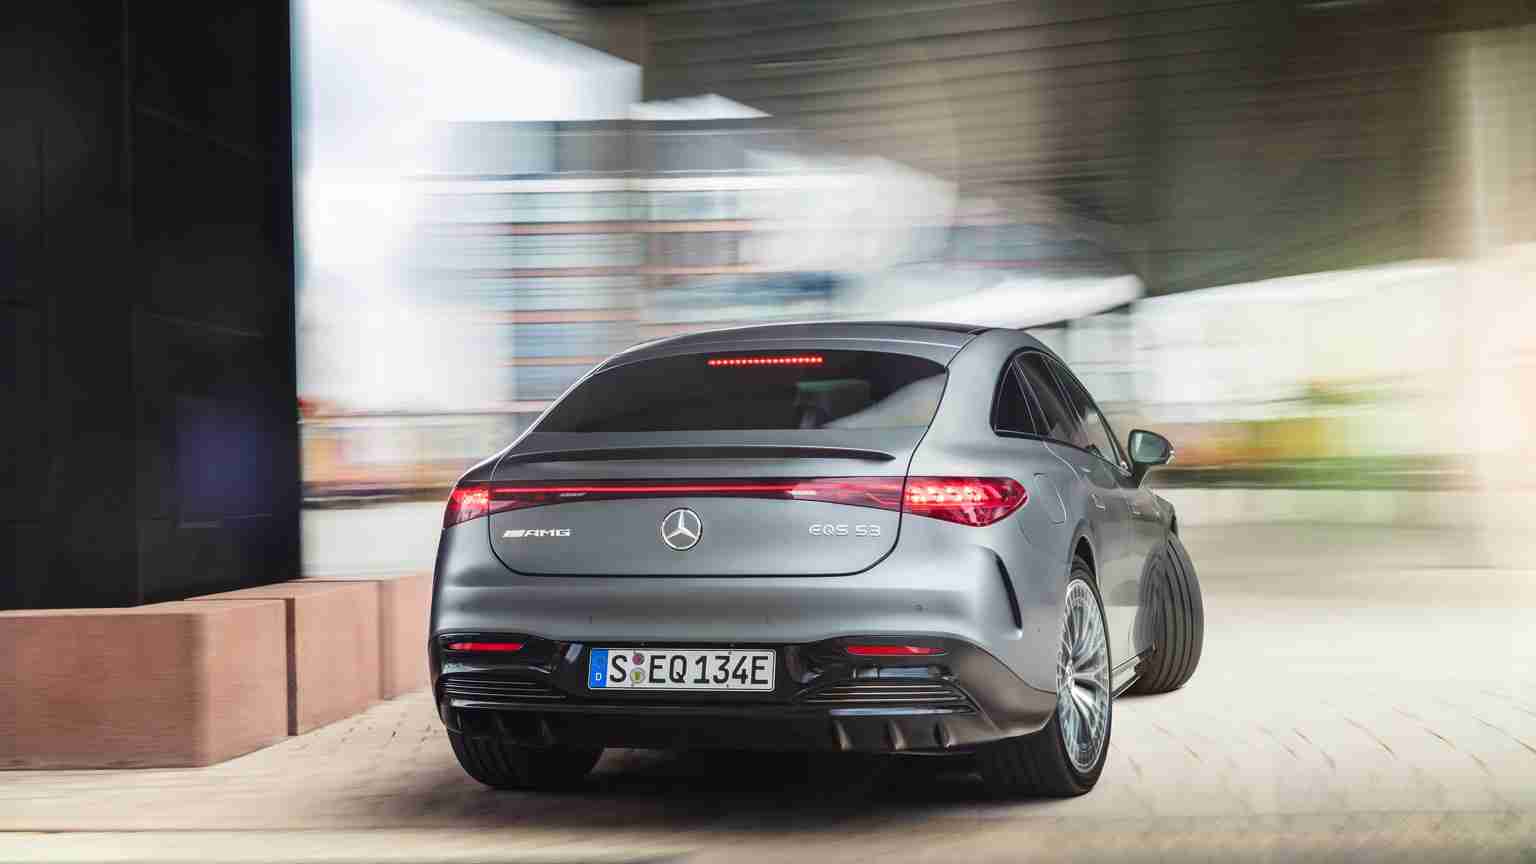 Mercedes EQS AMG 53 4MATICplus 2022